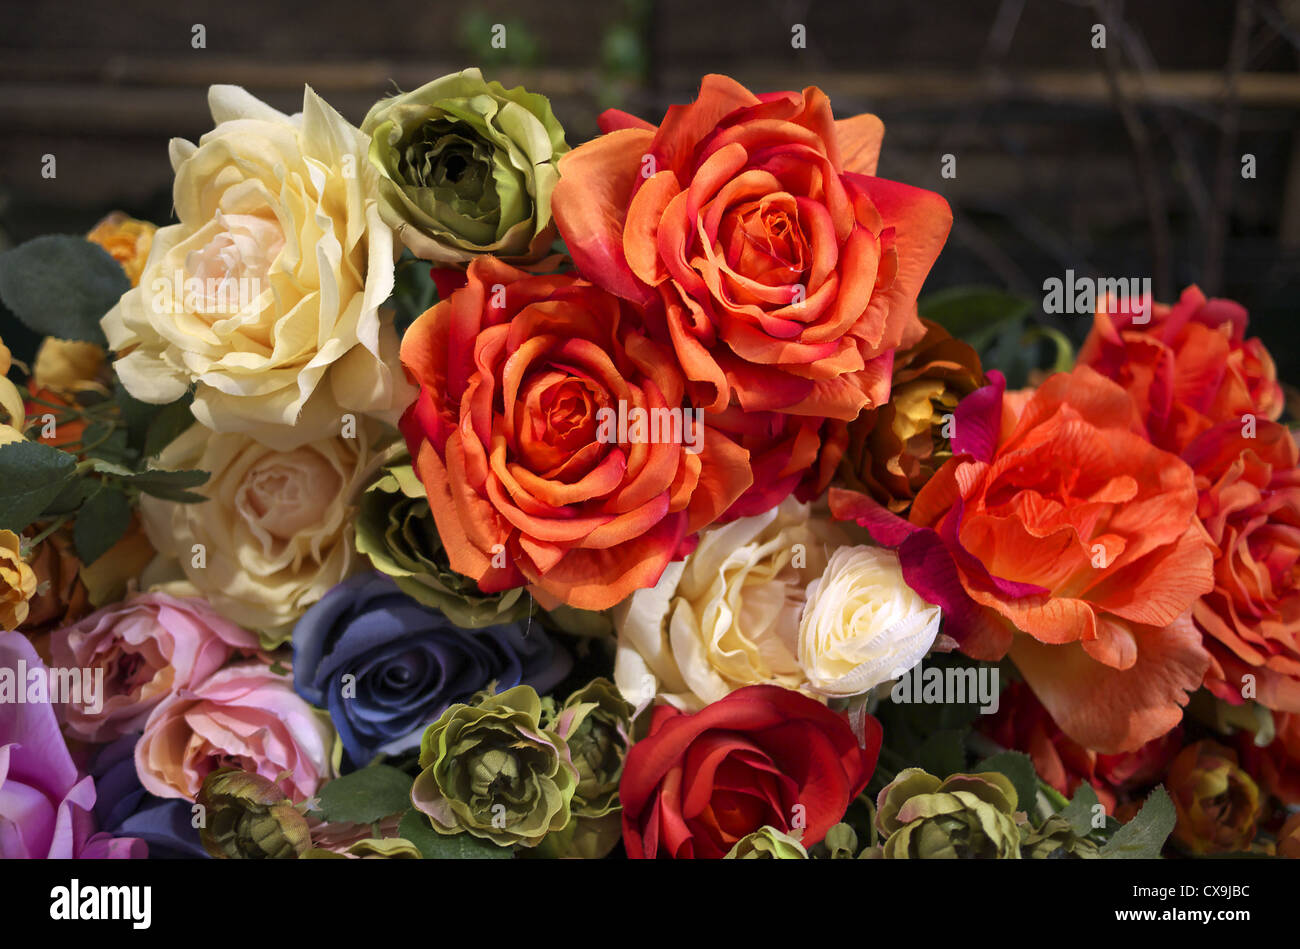 12 x recoge las rosas con follaje rojo arte flores-seidenblumen 